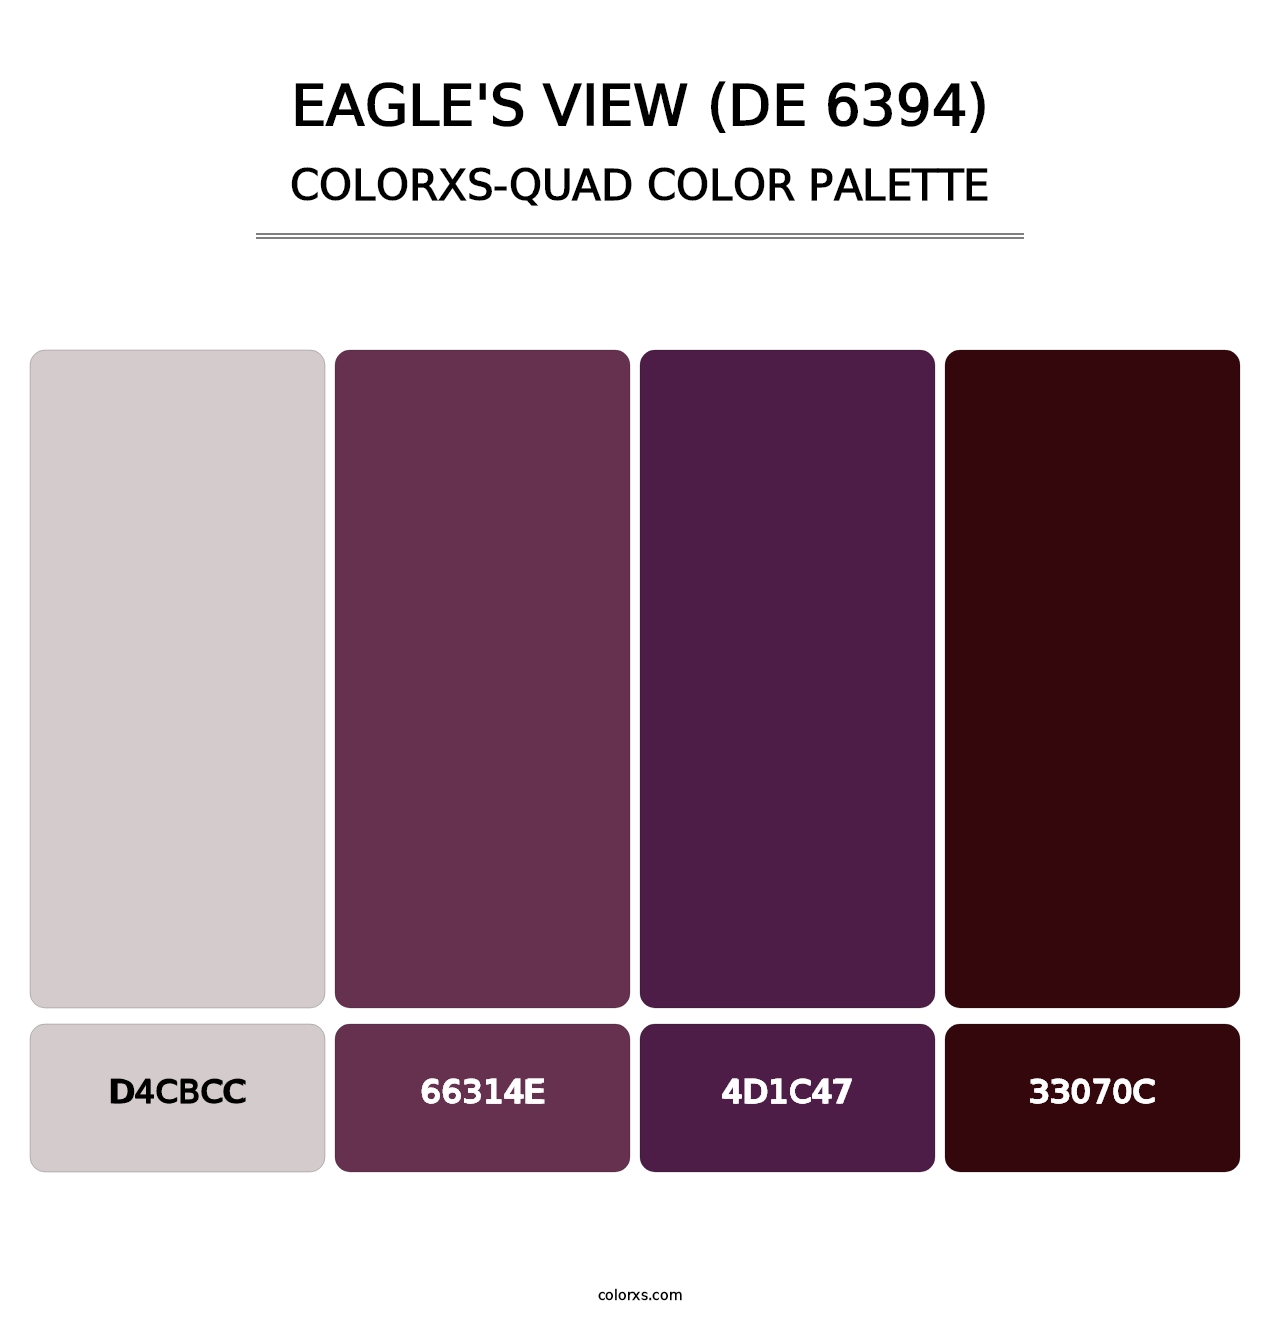 Eagle's View (DE 6394) - Colorxs Quad Palette